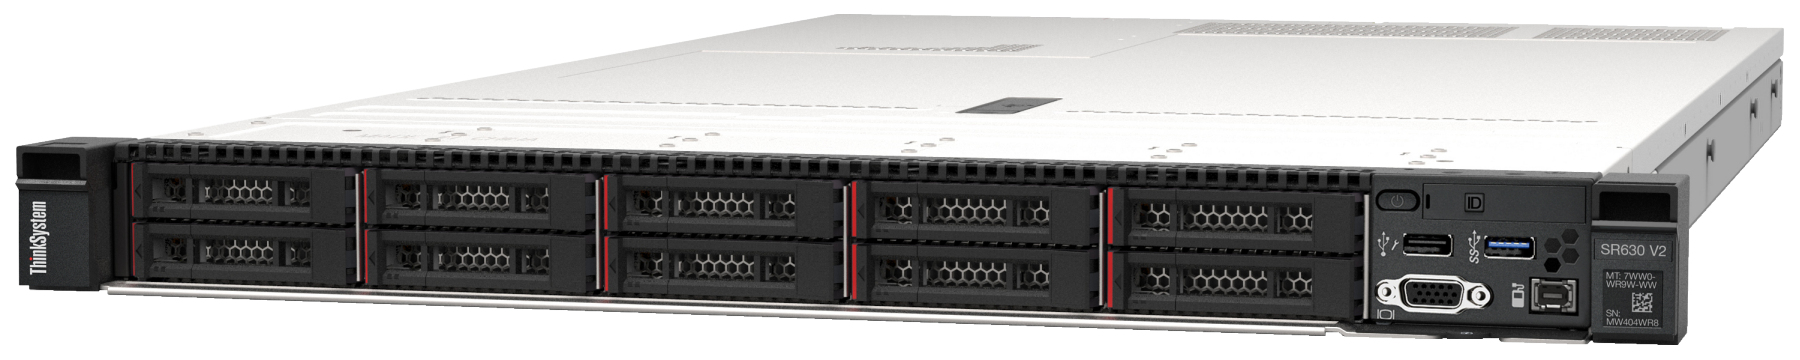 Сервер Lenovo ThinkSystem SR630 V2 (7Z71A058EA). Фиксированная комплектация сервера